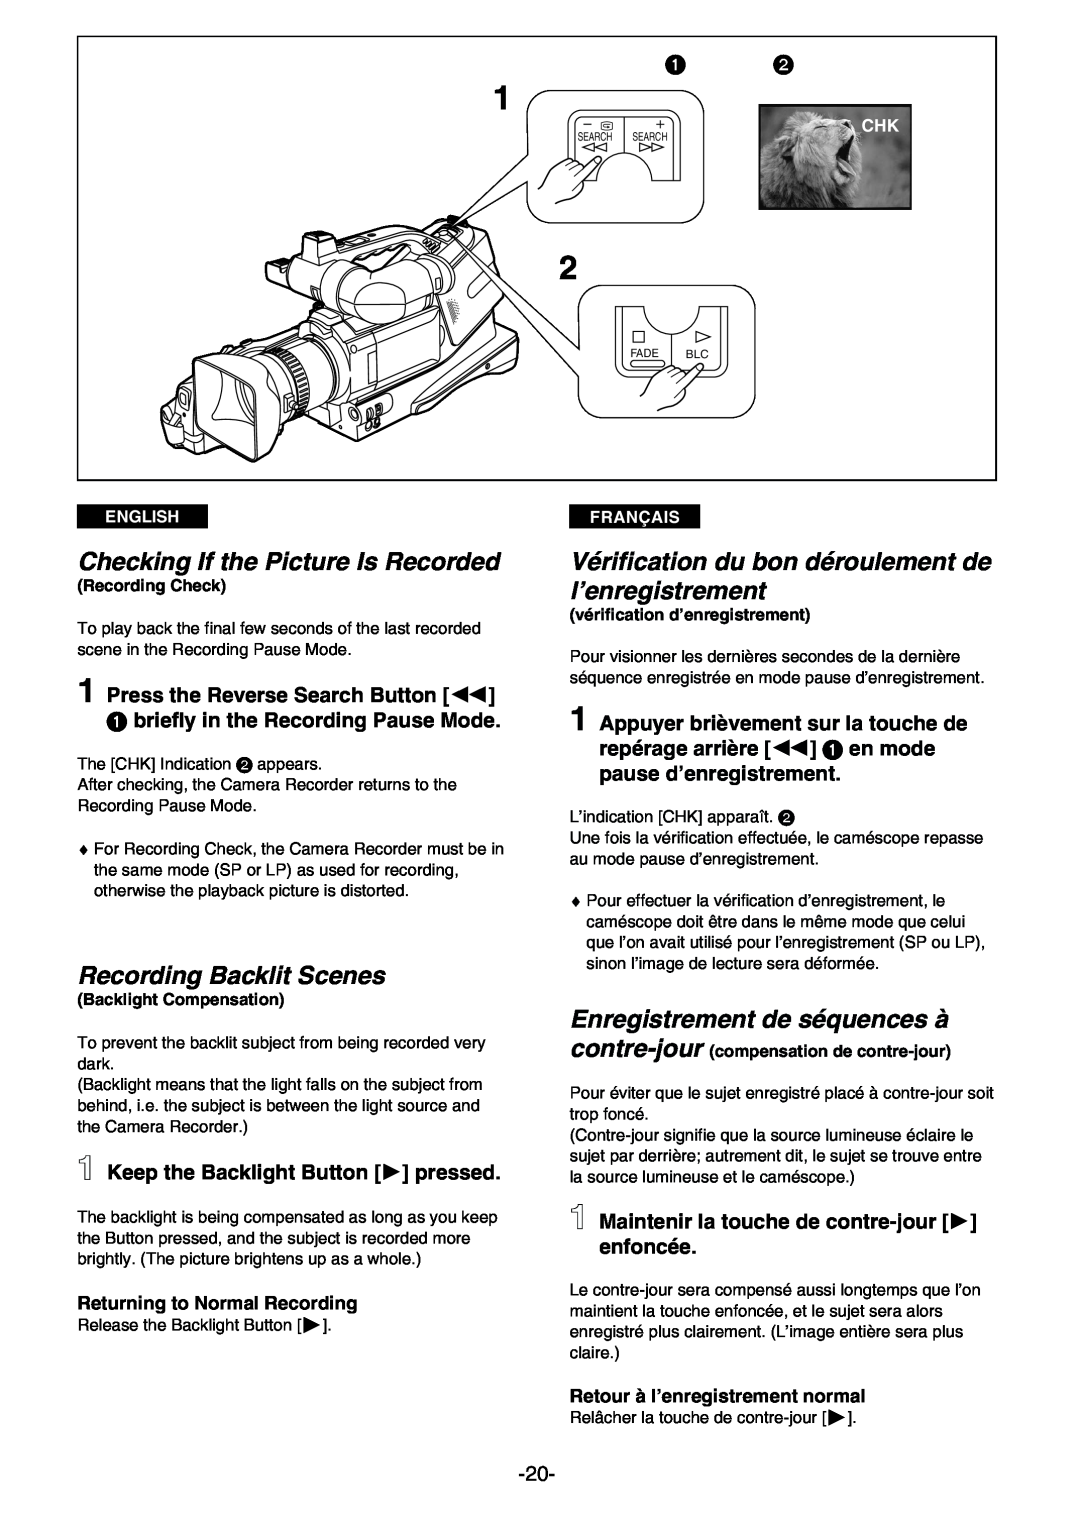 Panasonic AG- DVC 15P manual Checking If the Picture Is Recorded, Recording Backlit Scenes, Enregistrement de séquences à 